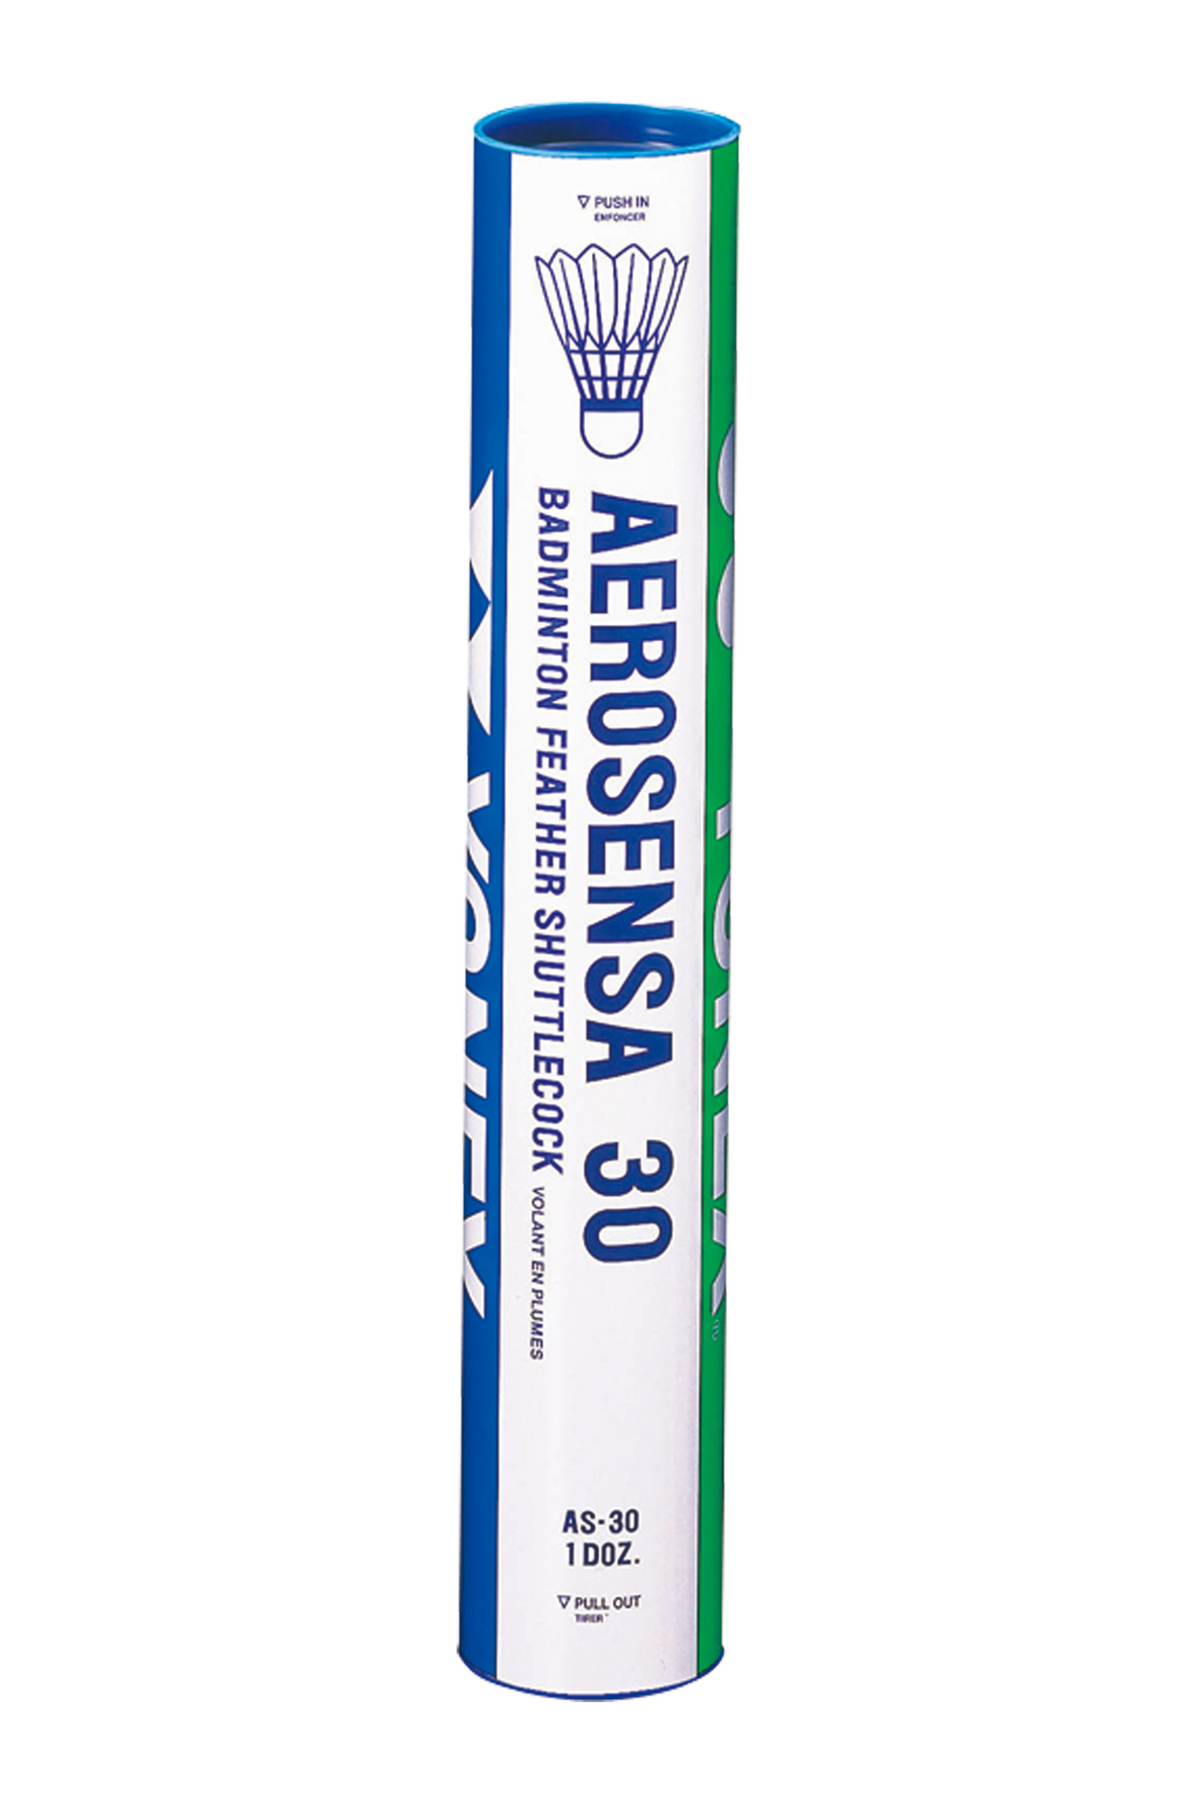 Yonex Aerosensa 30 (AS30) Badminton Shuttlecocks